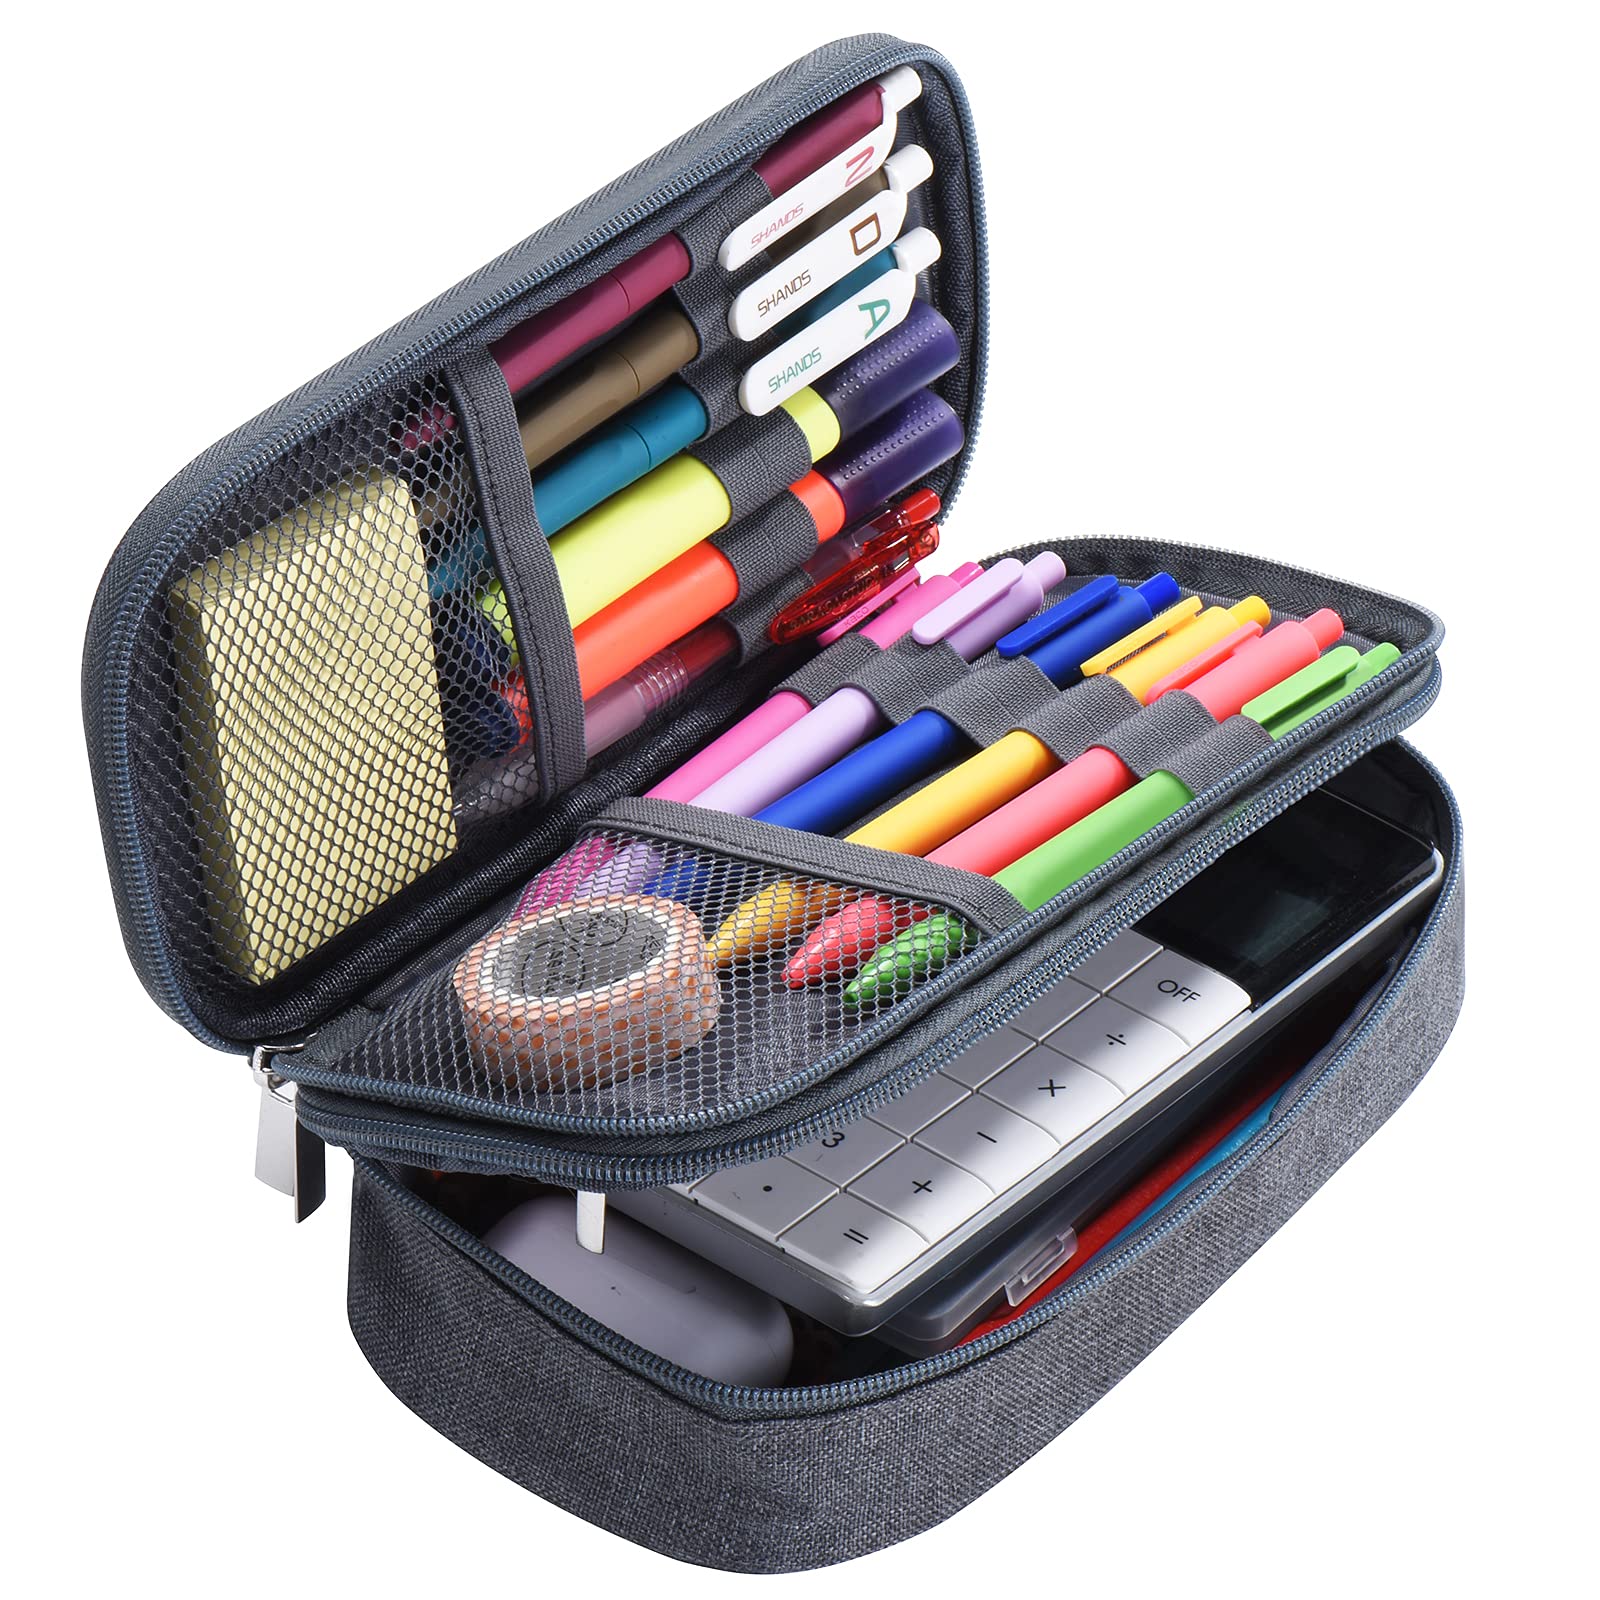 Pencil Case Large Capacity w/ 3 Compartments Zipper Pouch Organizer Pen Bag